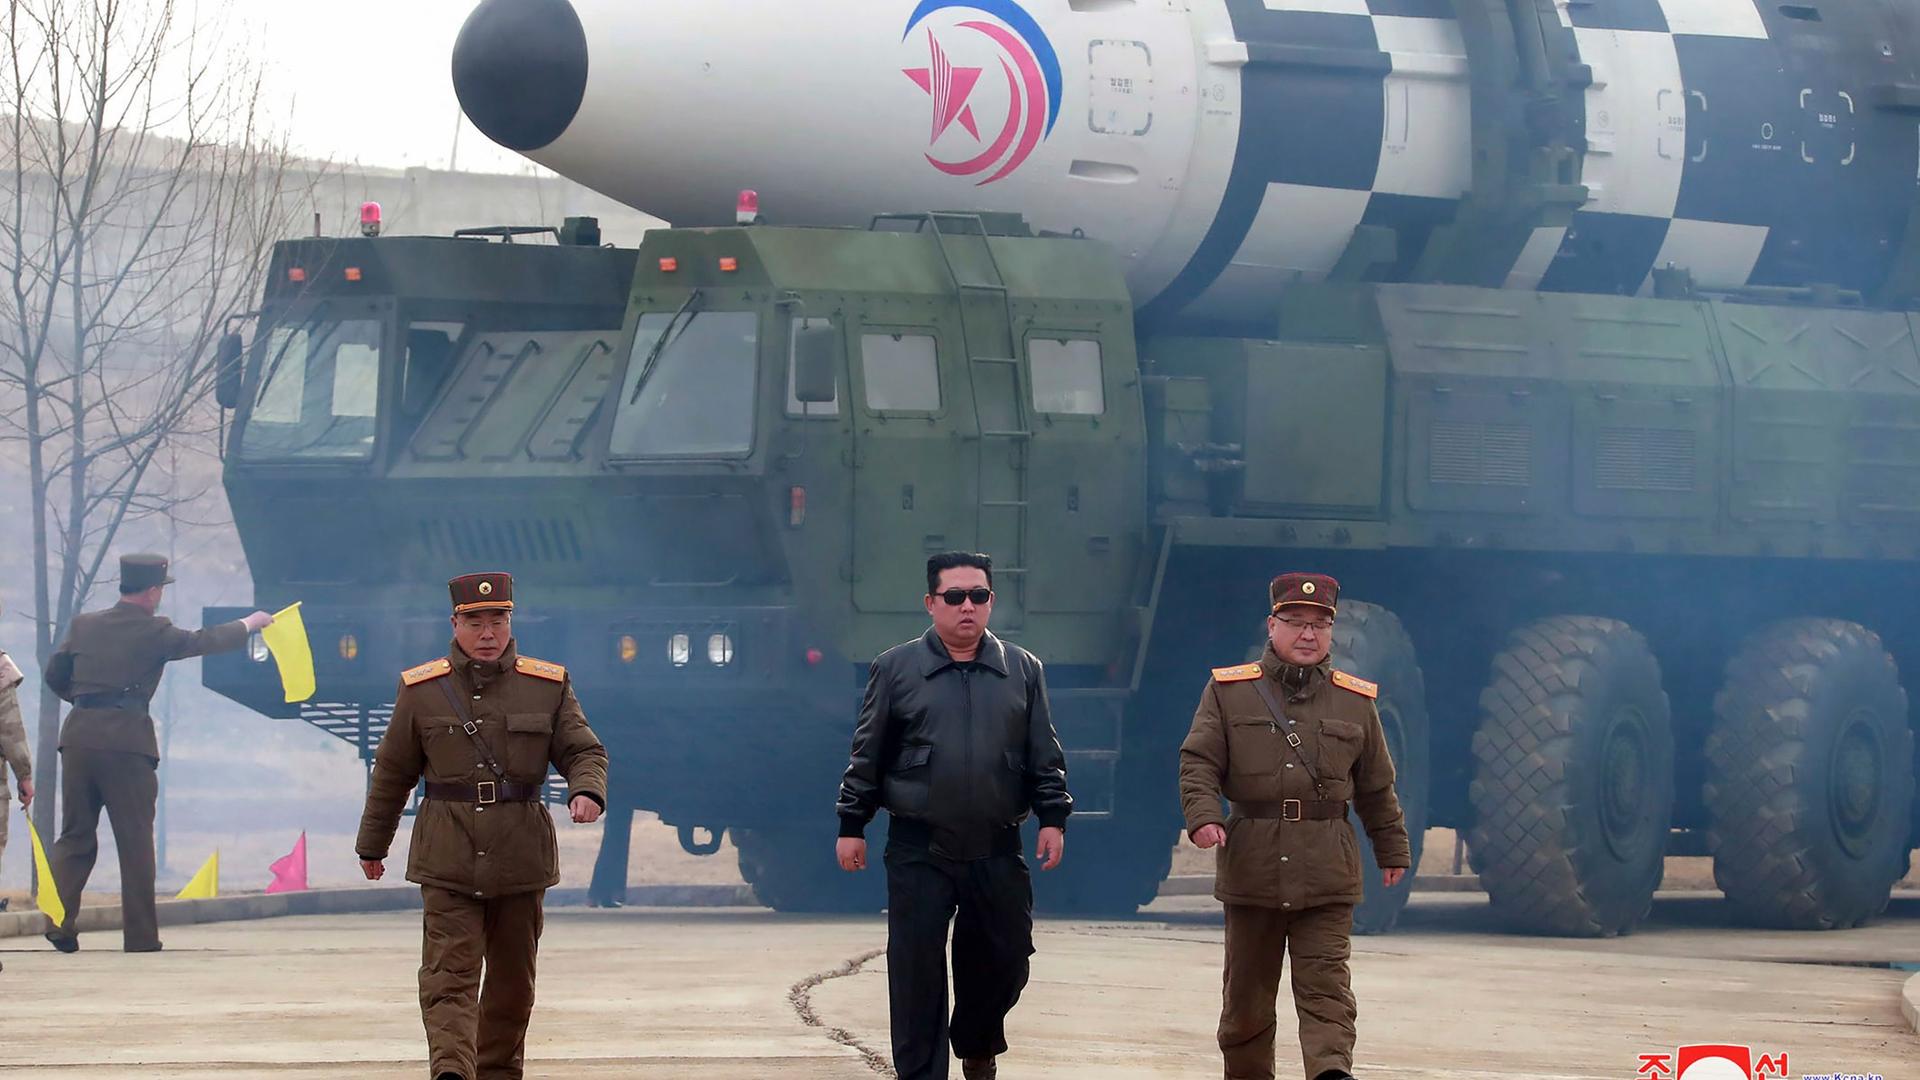 Der nordkoreanische Machthaber Kim Jong-un gemeinsam mit zwei Mitgliedern des Militärs - im Hintergrund ist eine Langstreckenrakete zu sehen.